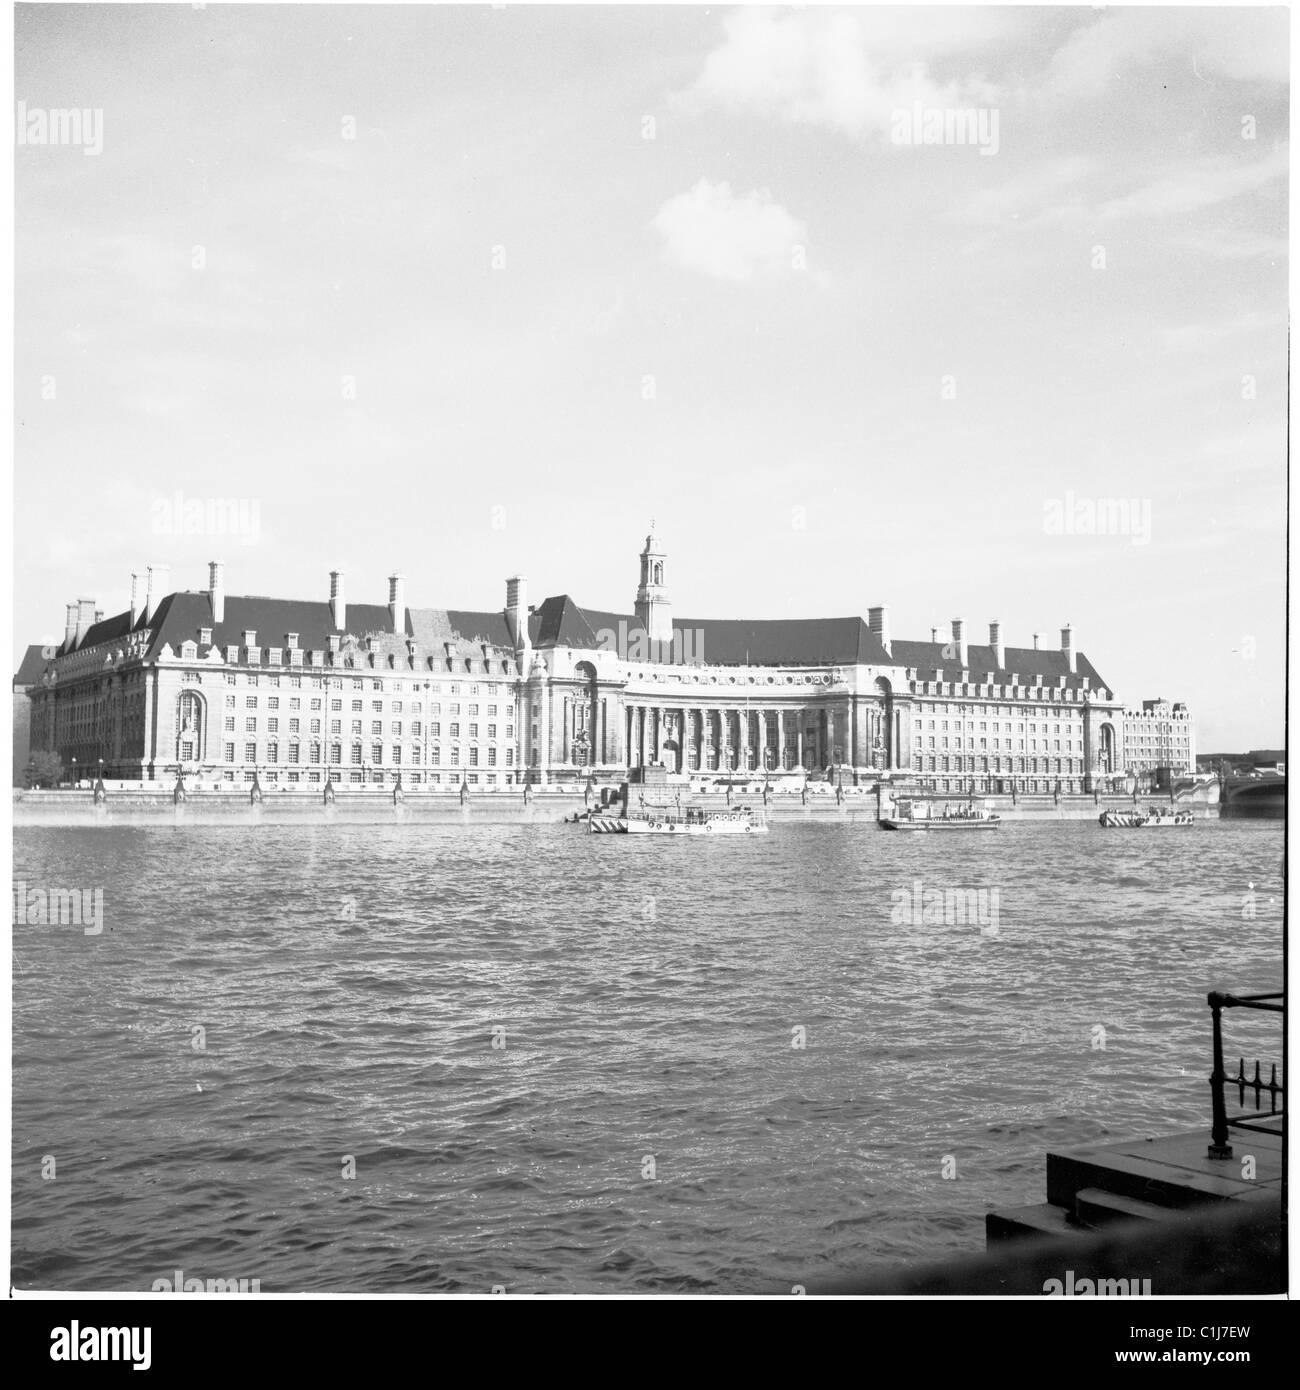 1950er Jahre, Blick auf die County Hall, ein Gebäude mit den Büros des London County Council (LCC) von der anderen Seite der Themse aus gesehen, Lambeth, London, England, Großbritannien. Stockfoto